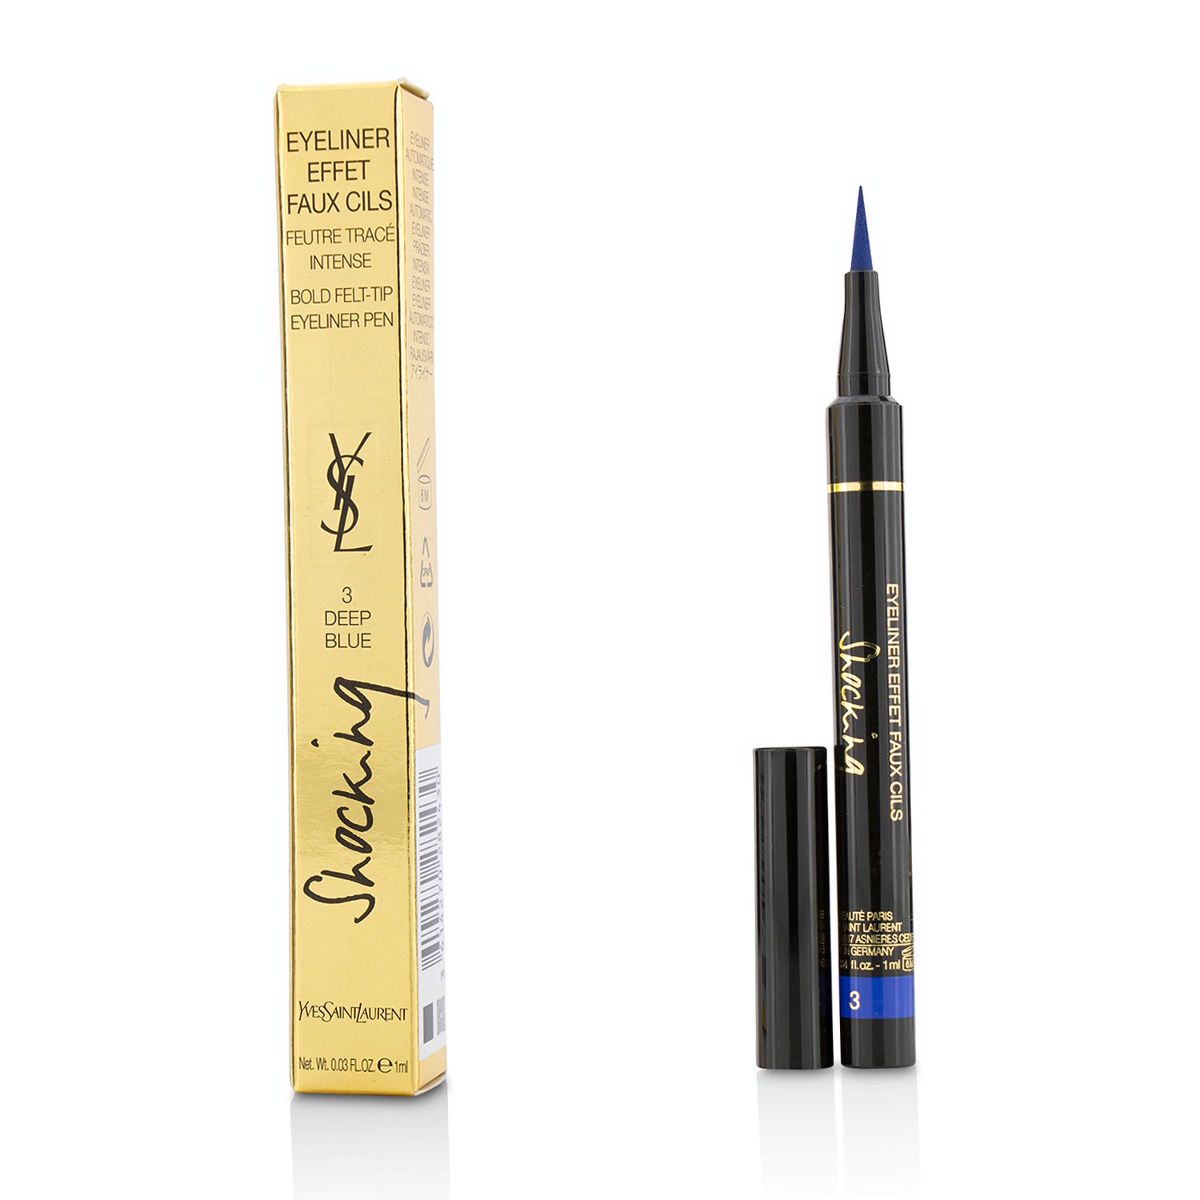 Eyeliner Effet Faux Cils Shocking (Bold Felt Tip Eyeliner Pen) - # 3 Deep Blue Yves Saint Laurent Image